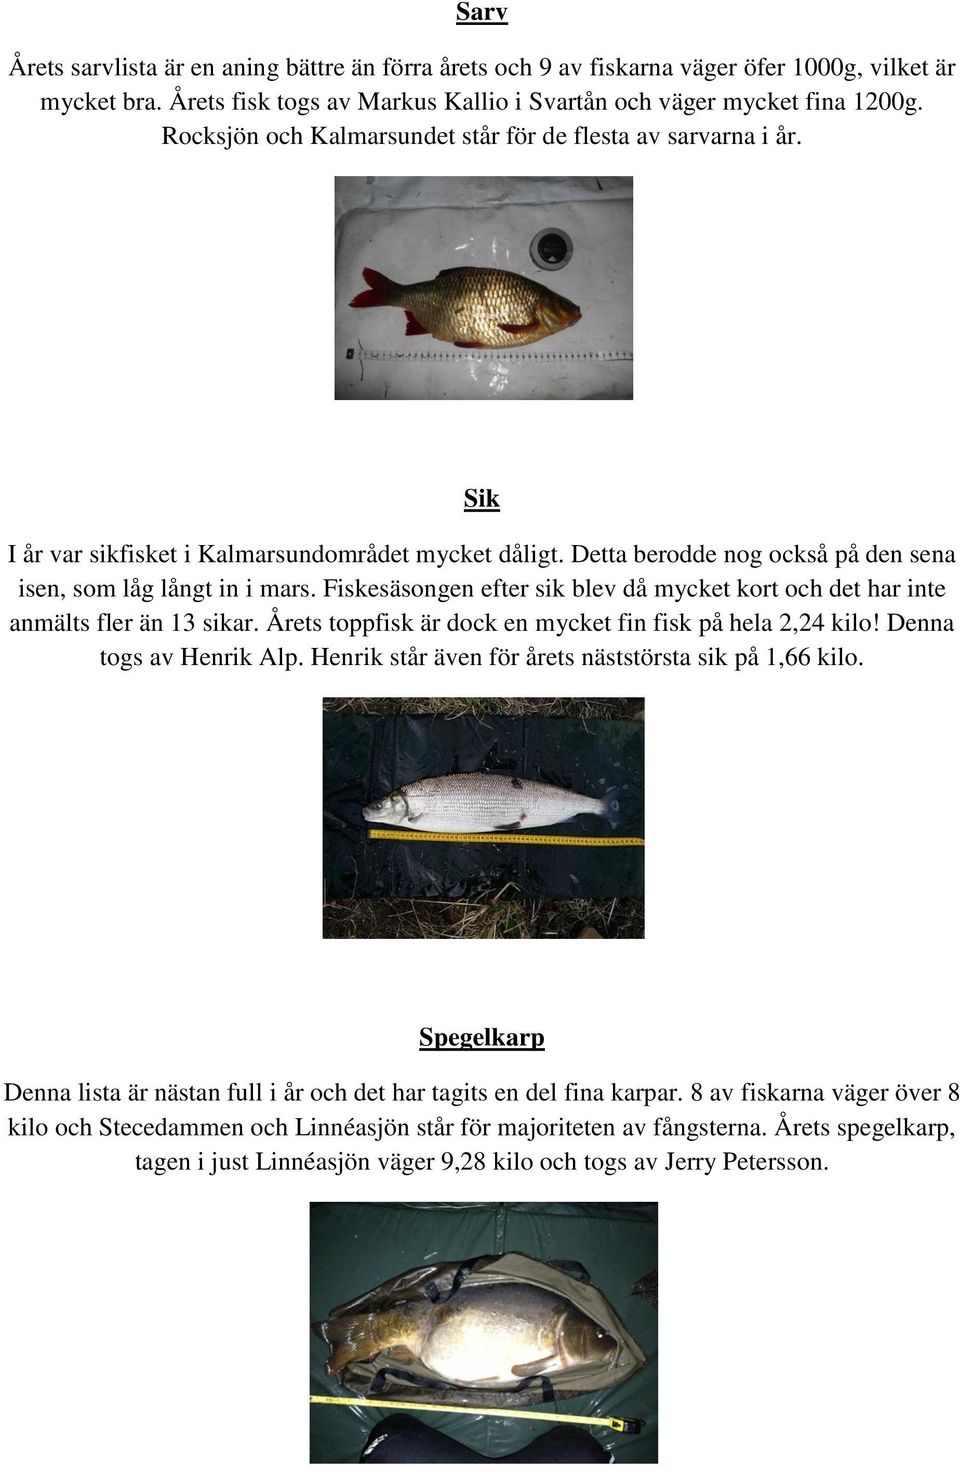 Fiskesäsongen efter sik blev då mycket kort och det har inte anmälts fler än 13 sikar. Årets toppfisk är dock en mycket fin fisk på hela 2,24 kilo! Denna togs av Henrik Alp.